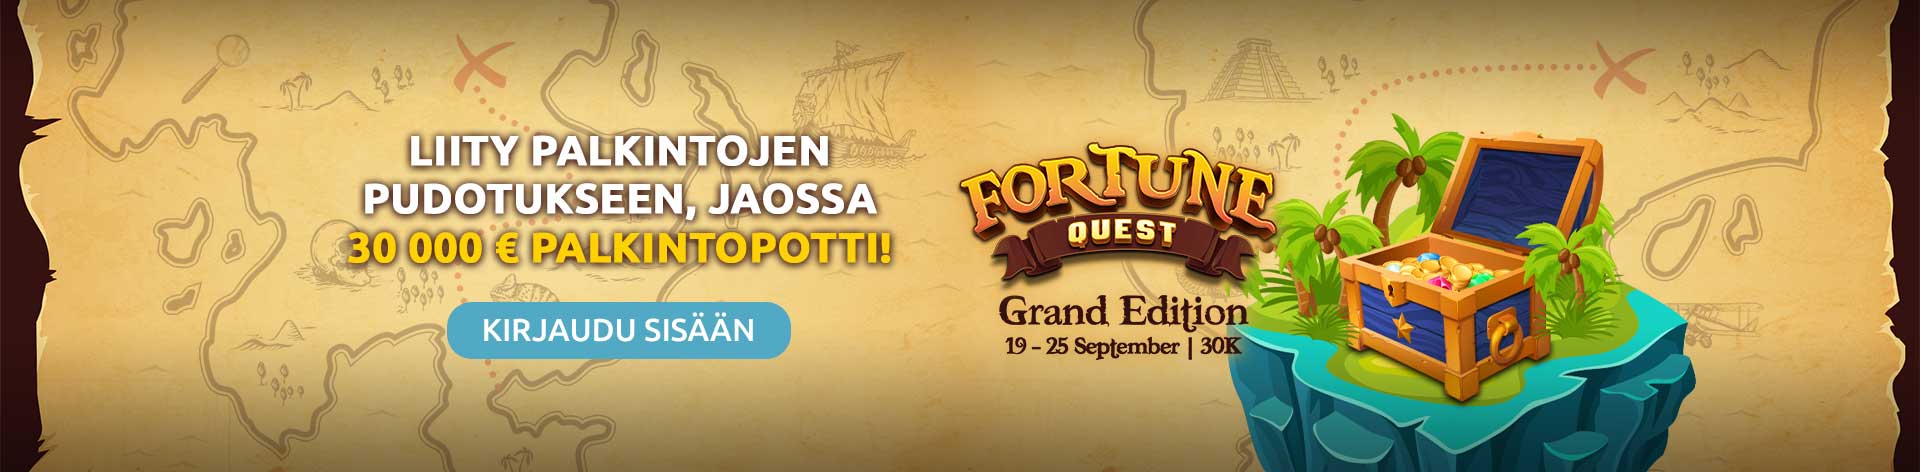 Liity palkintojen pudotukseen, jaossa 30 000 € palkintopotti! Fortune Quest Grand Edition 19-25 September | 30K.